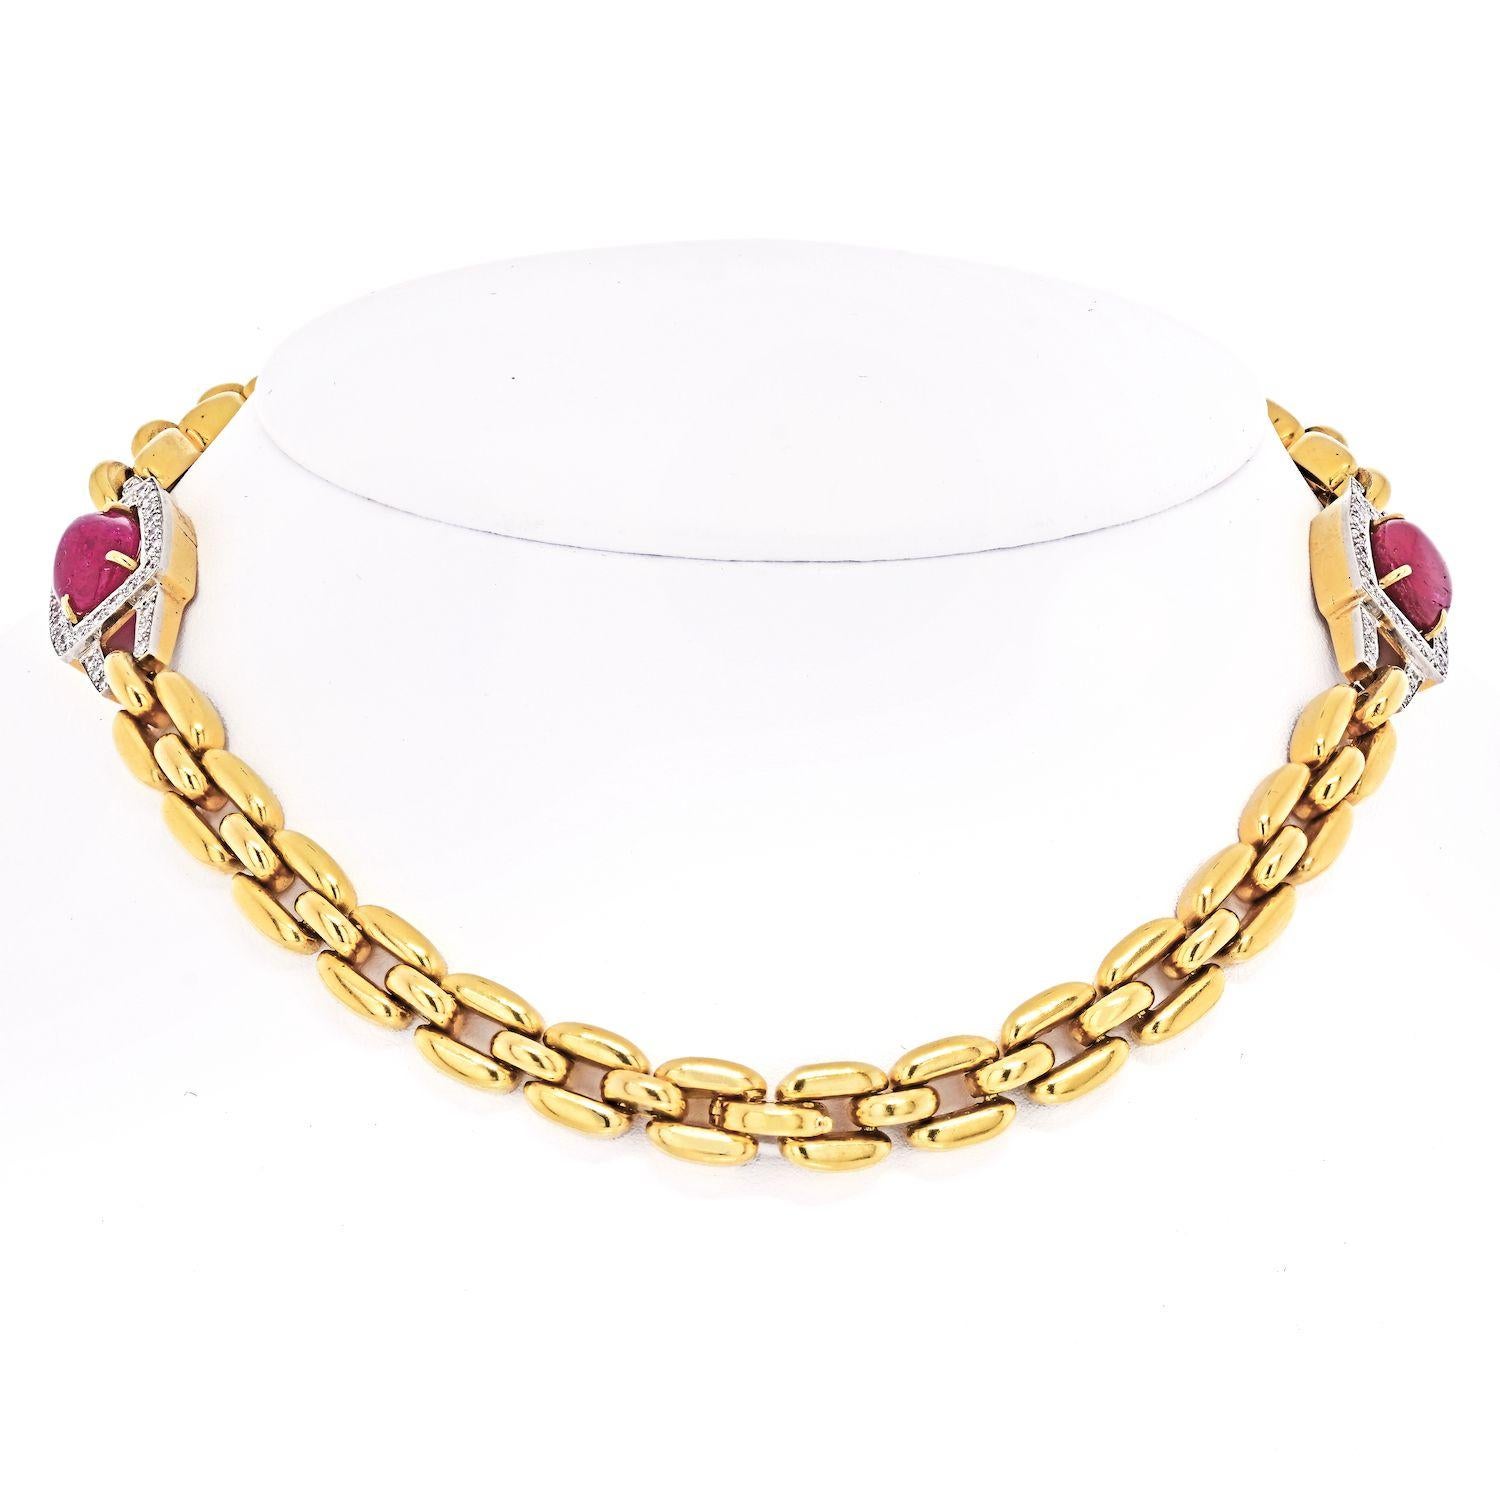 Collier audacieux et élégant créé par David Webb dans les années 1970. Comprend deux rubis cabochon accentués par des diamants ronds sertis en or jaune.
Le collier se détache et se transforme en deux bracelets. Les bracelets mesurent 7,25